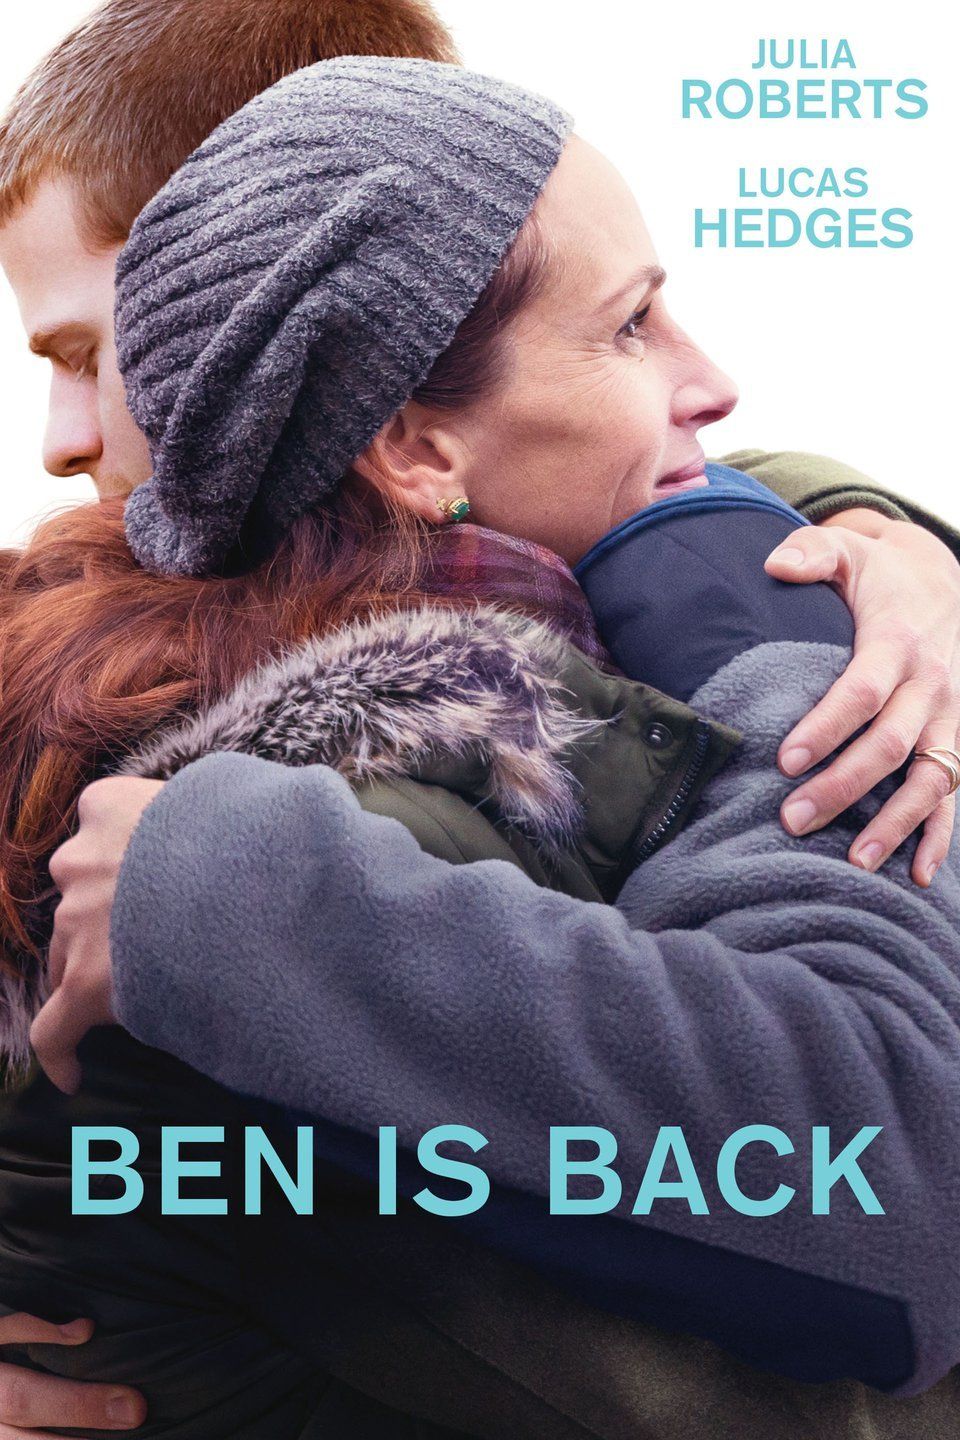 Peter Hedges „Benas grįžo į namus“ (2018, trukmė 1:43)